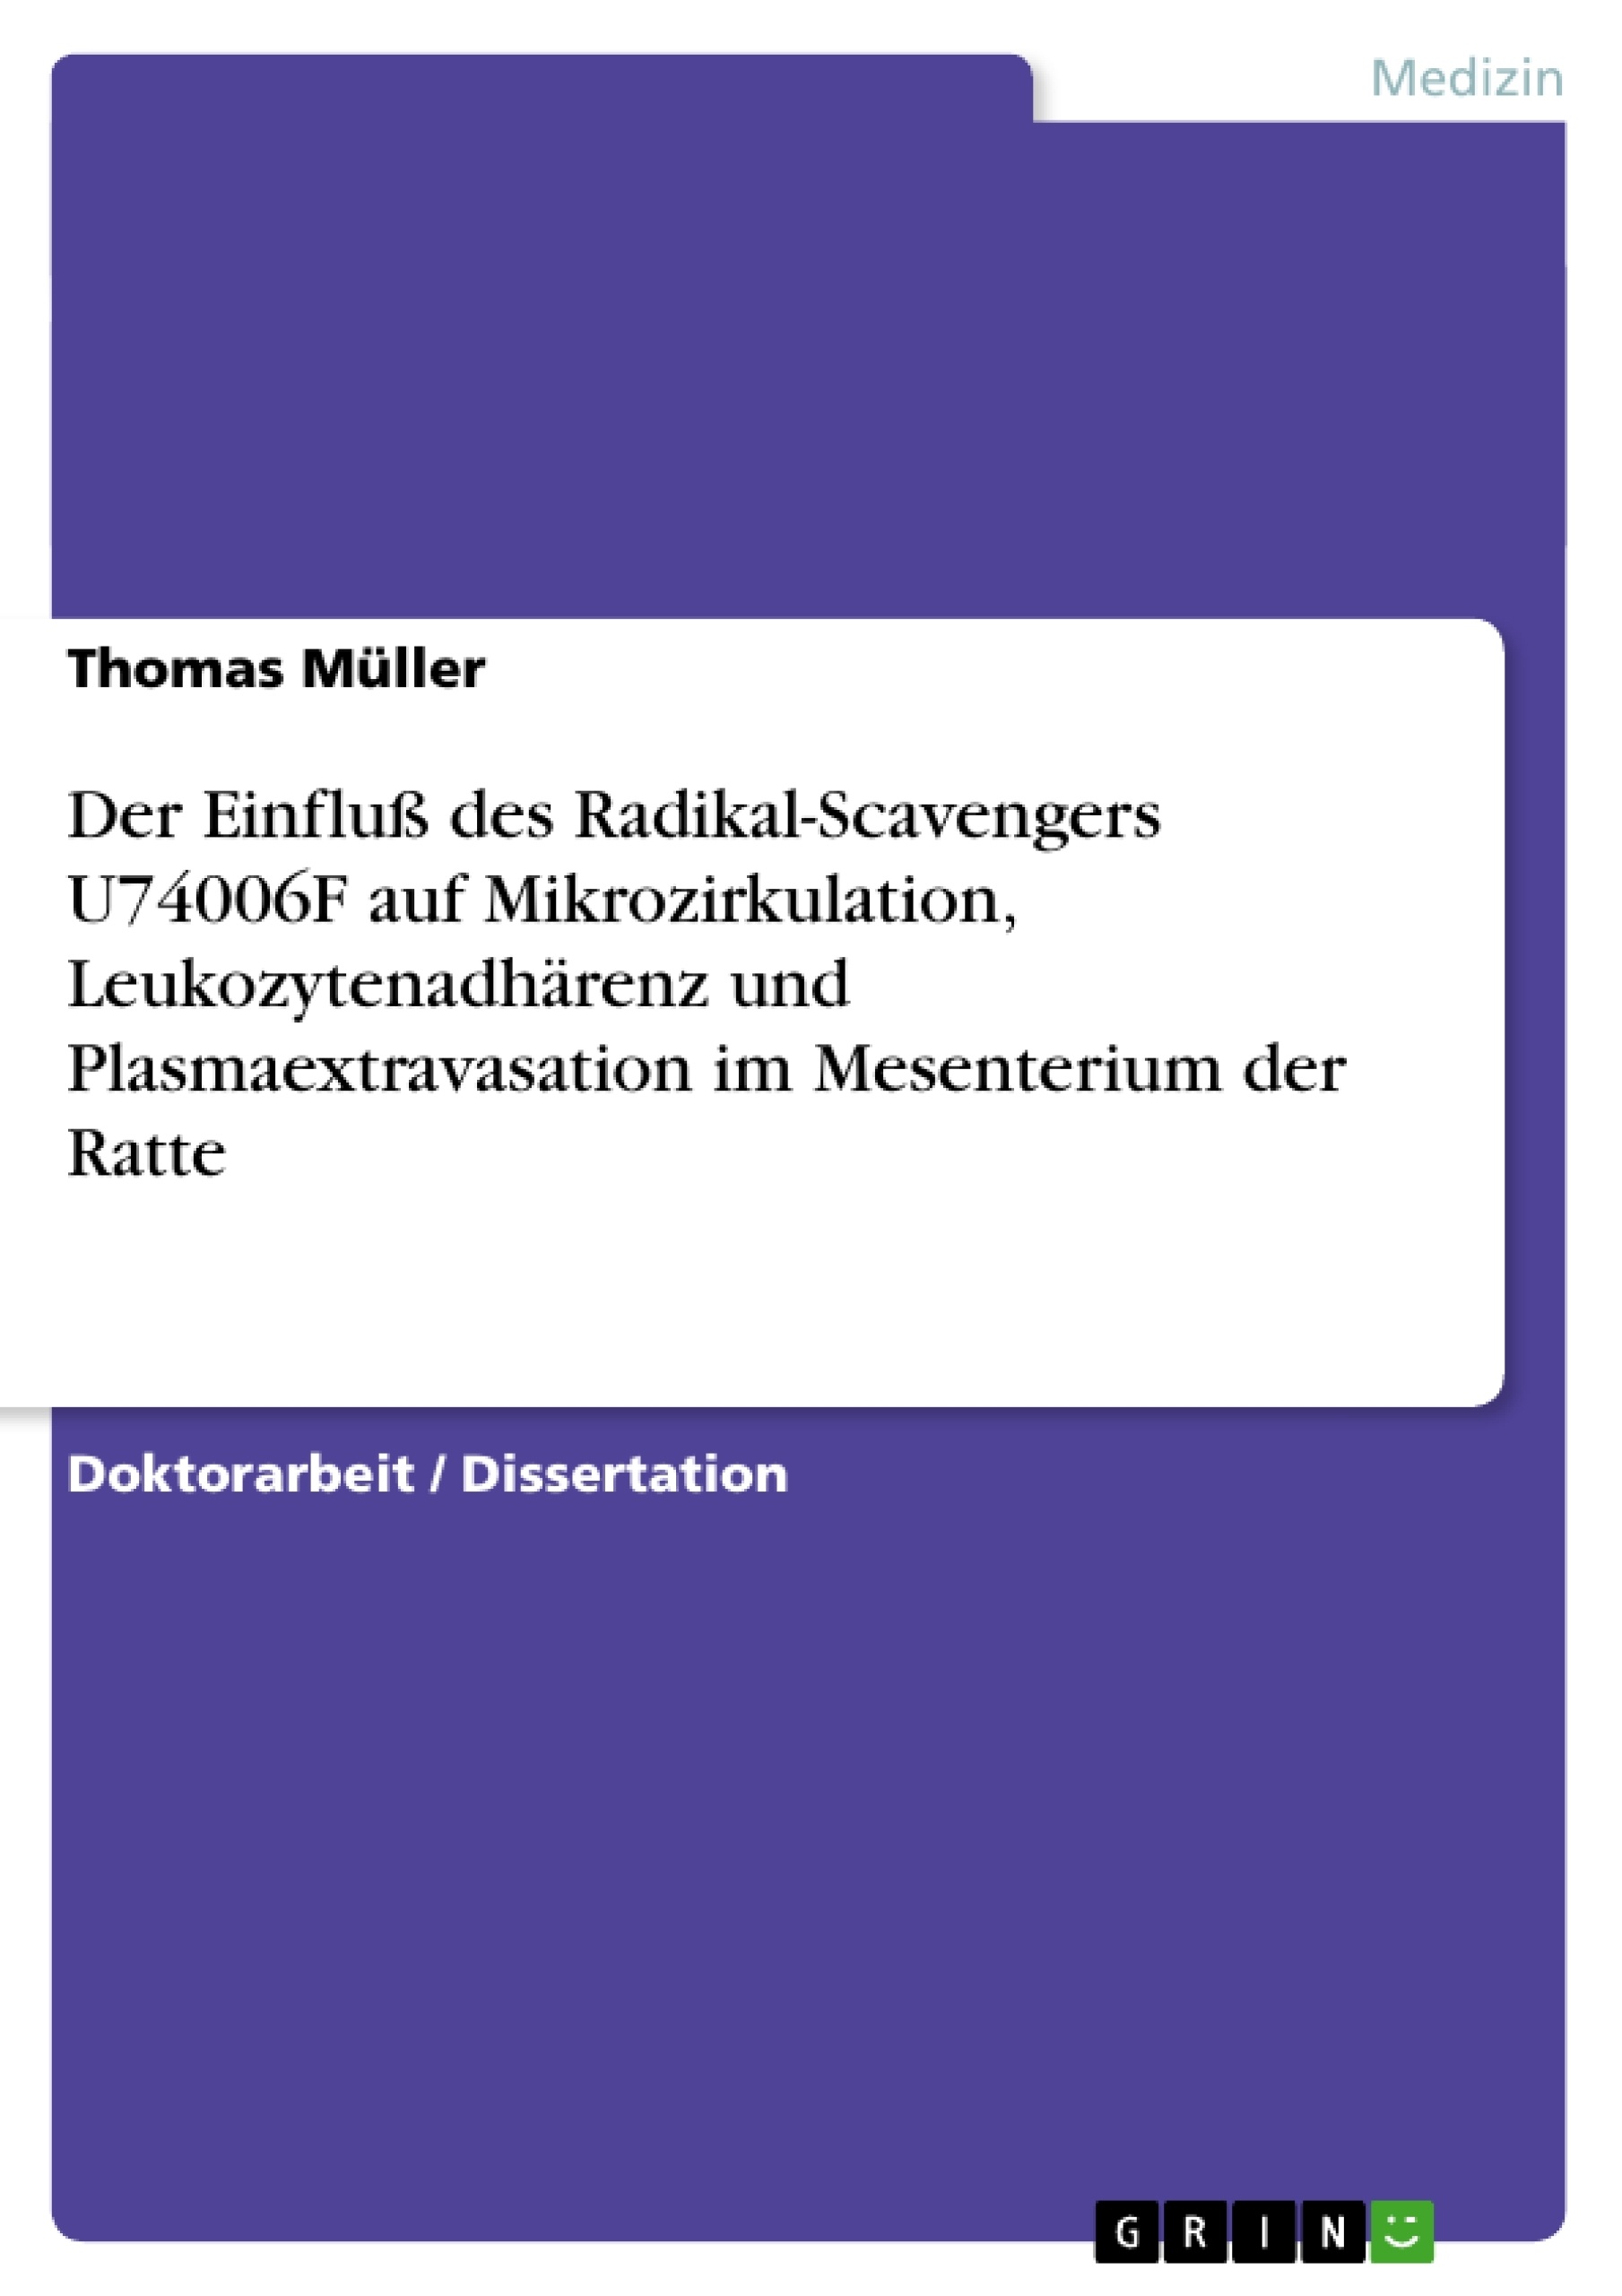 Titre: Der Einfluß des Radikal-Scavengers U74006F auf Mikrozirkulation, Leukozytenadhärenz und Plasmaextravasation im Mesenterium der Ratte